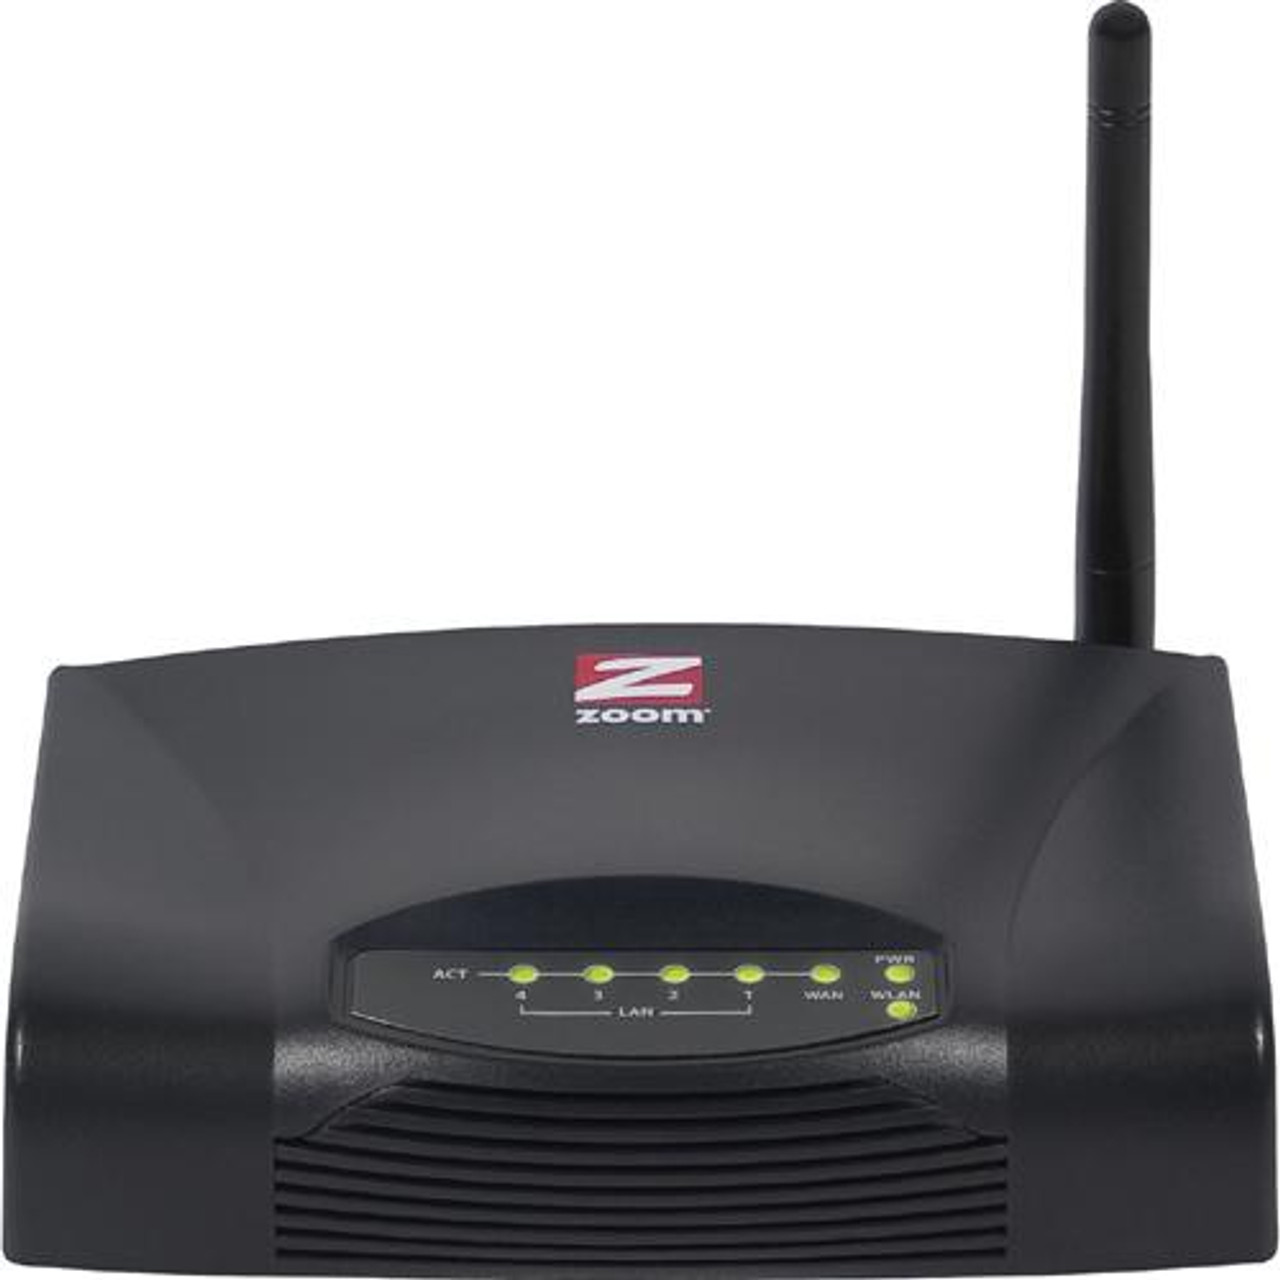 4401-00-00AF Zoom 4401 Wireless-G Broadband Router 4 x 10/100Base-TX LAN, 1 x 10/100Base-TX WAN IEEE 802.11b/g 54Mbps (Refurbished)